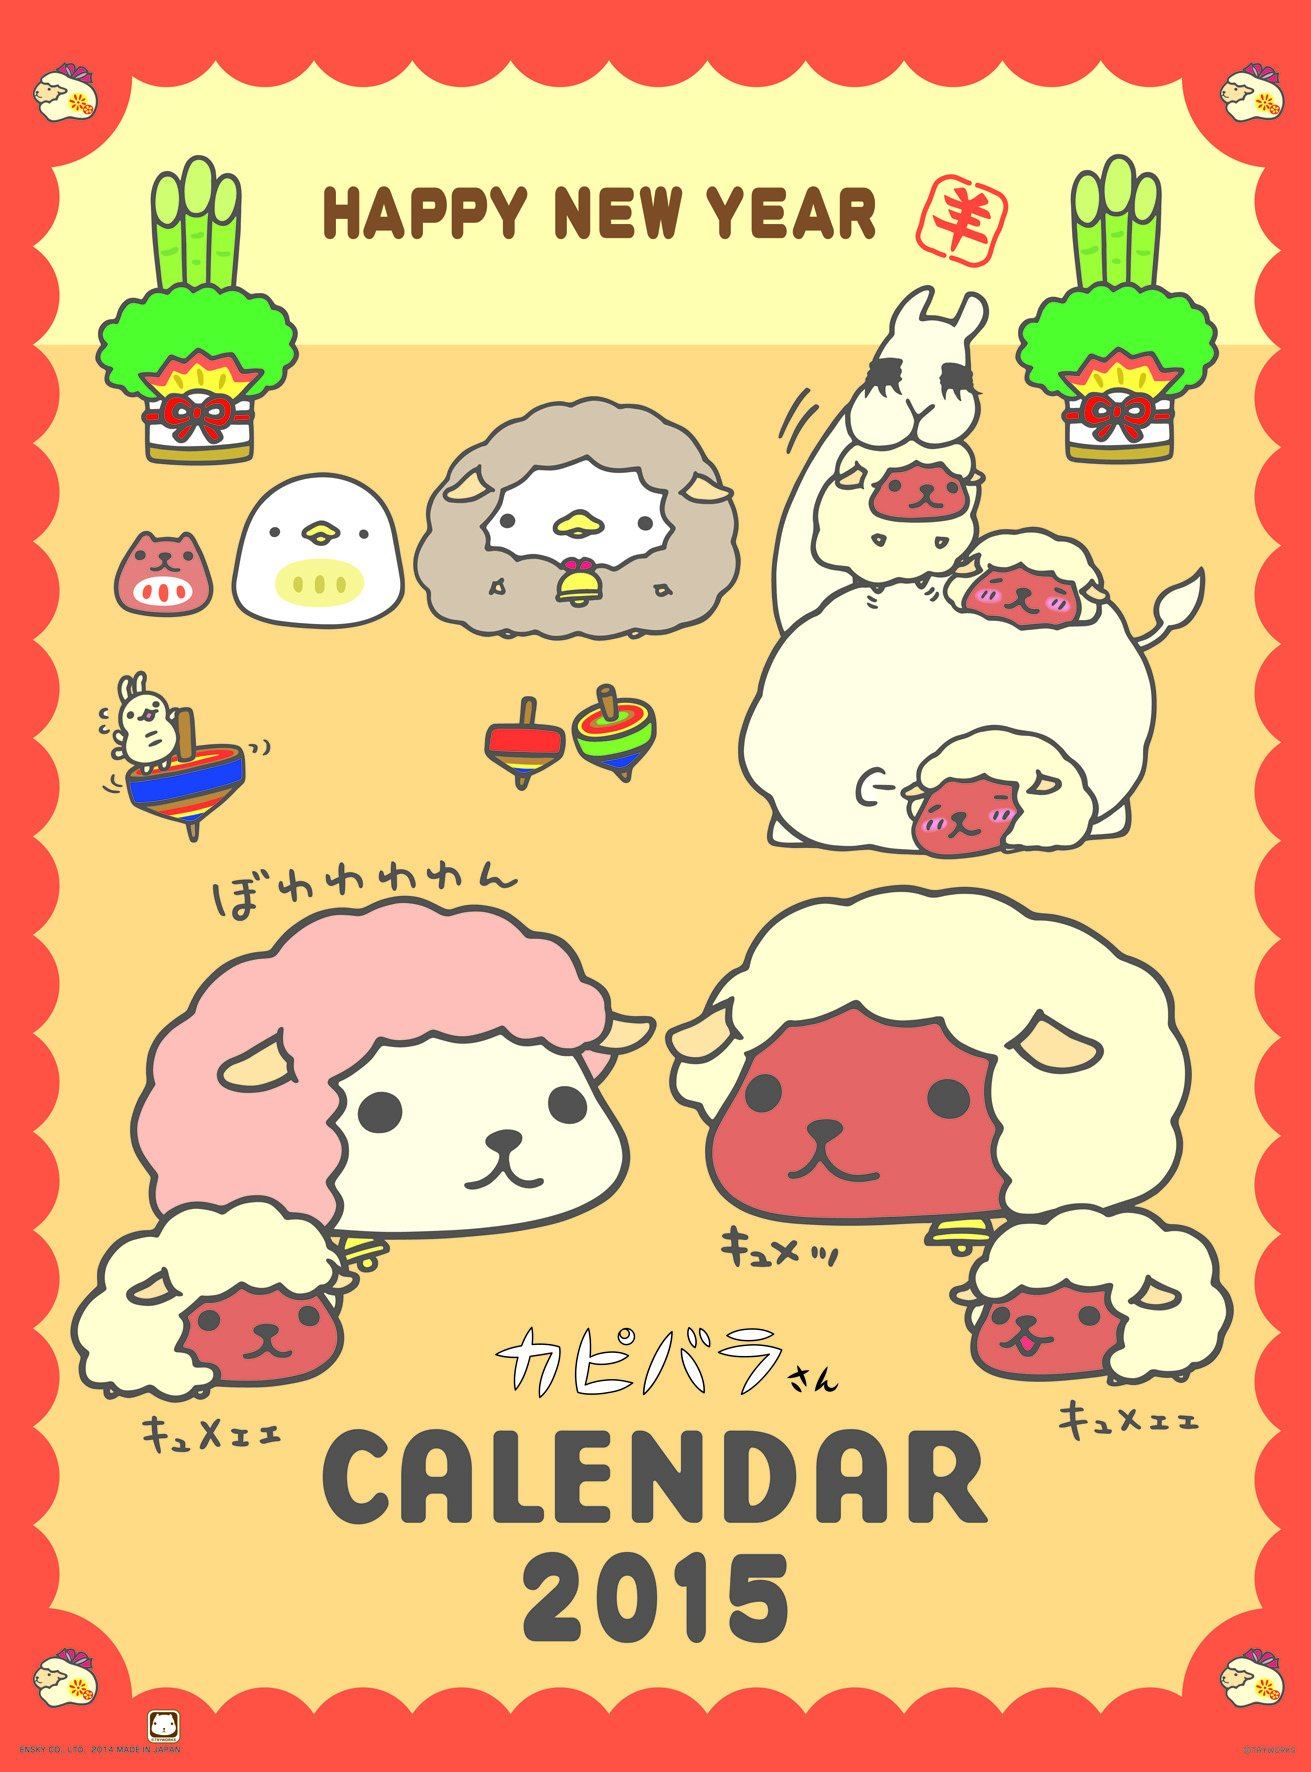 Capybara-san [Calendar 2015]